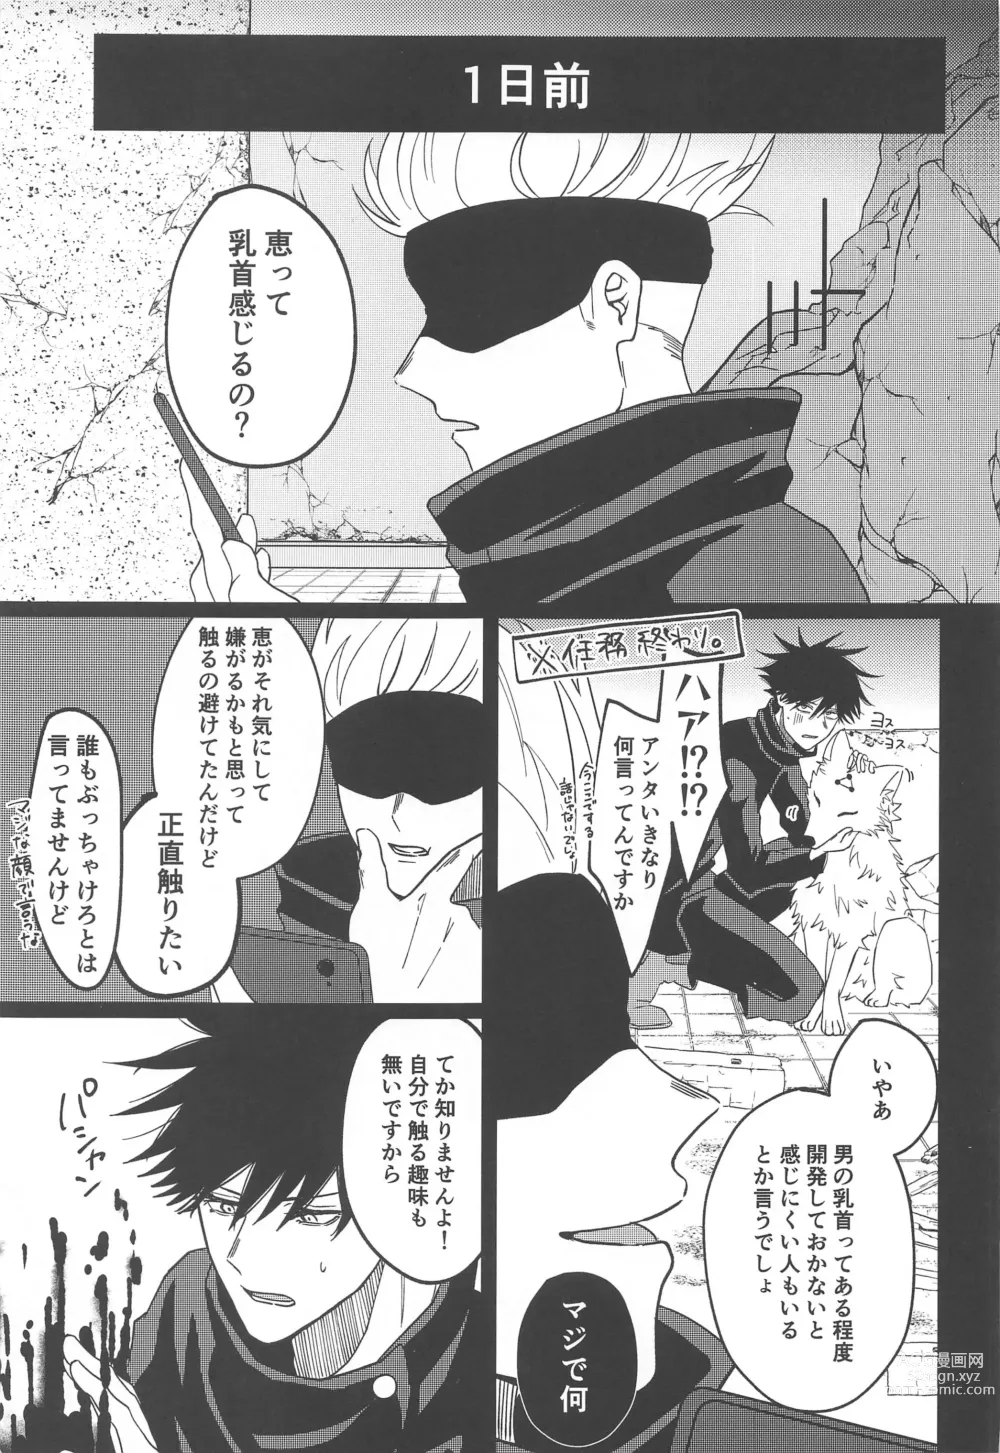 Page 4 of doujinshi Kanjiru Wake ga Nai